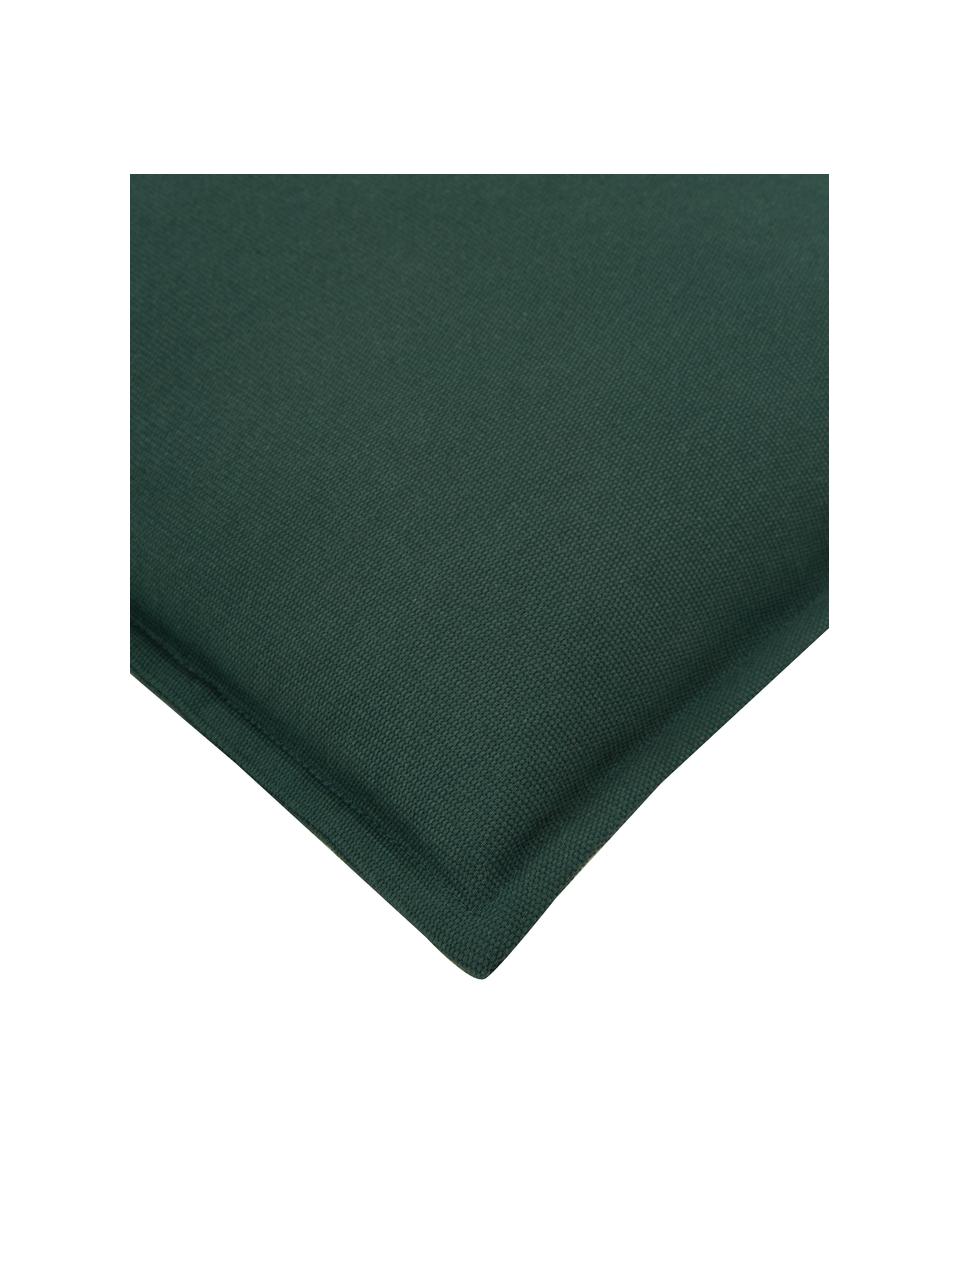 Housse de coussin en coton vert foncé Mads, 100 % coton, Vert foncé, larg. 40 x long. 40 cm